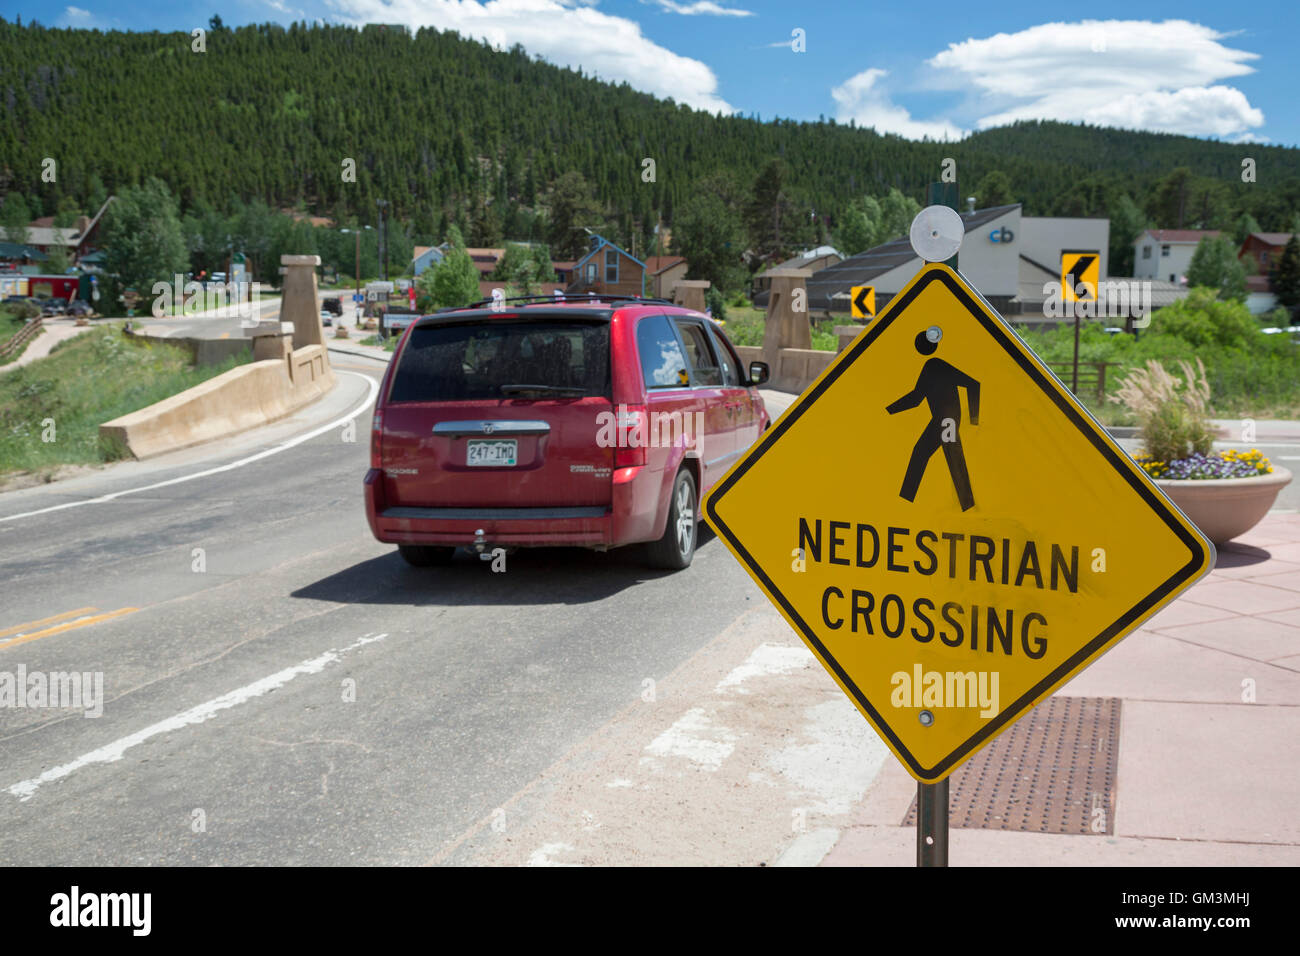 Nederland, Colorado - un passage pour piétons signer dans une ville de montagne du Colorado. Banque D'Images